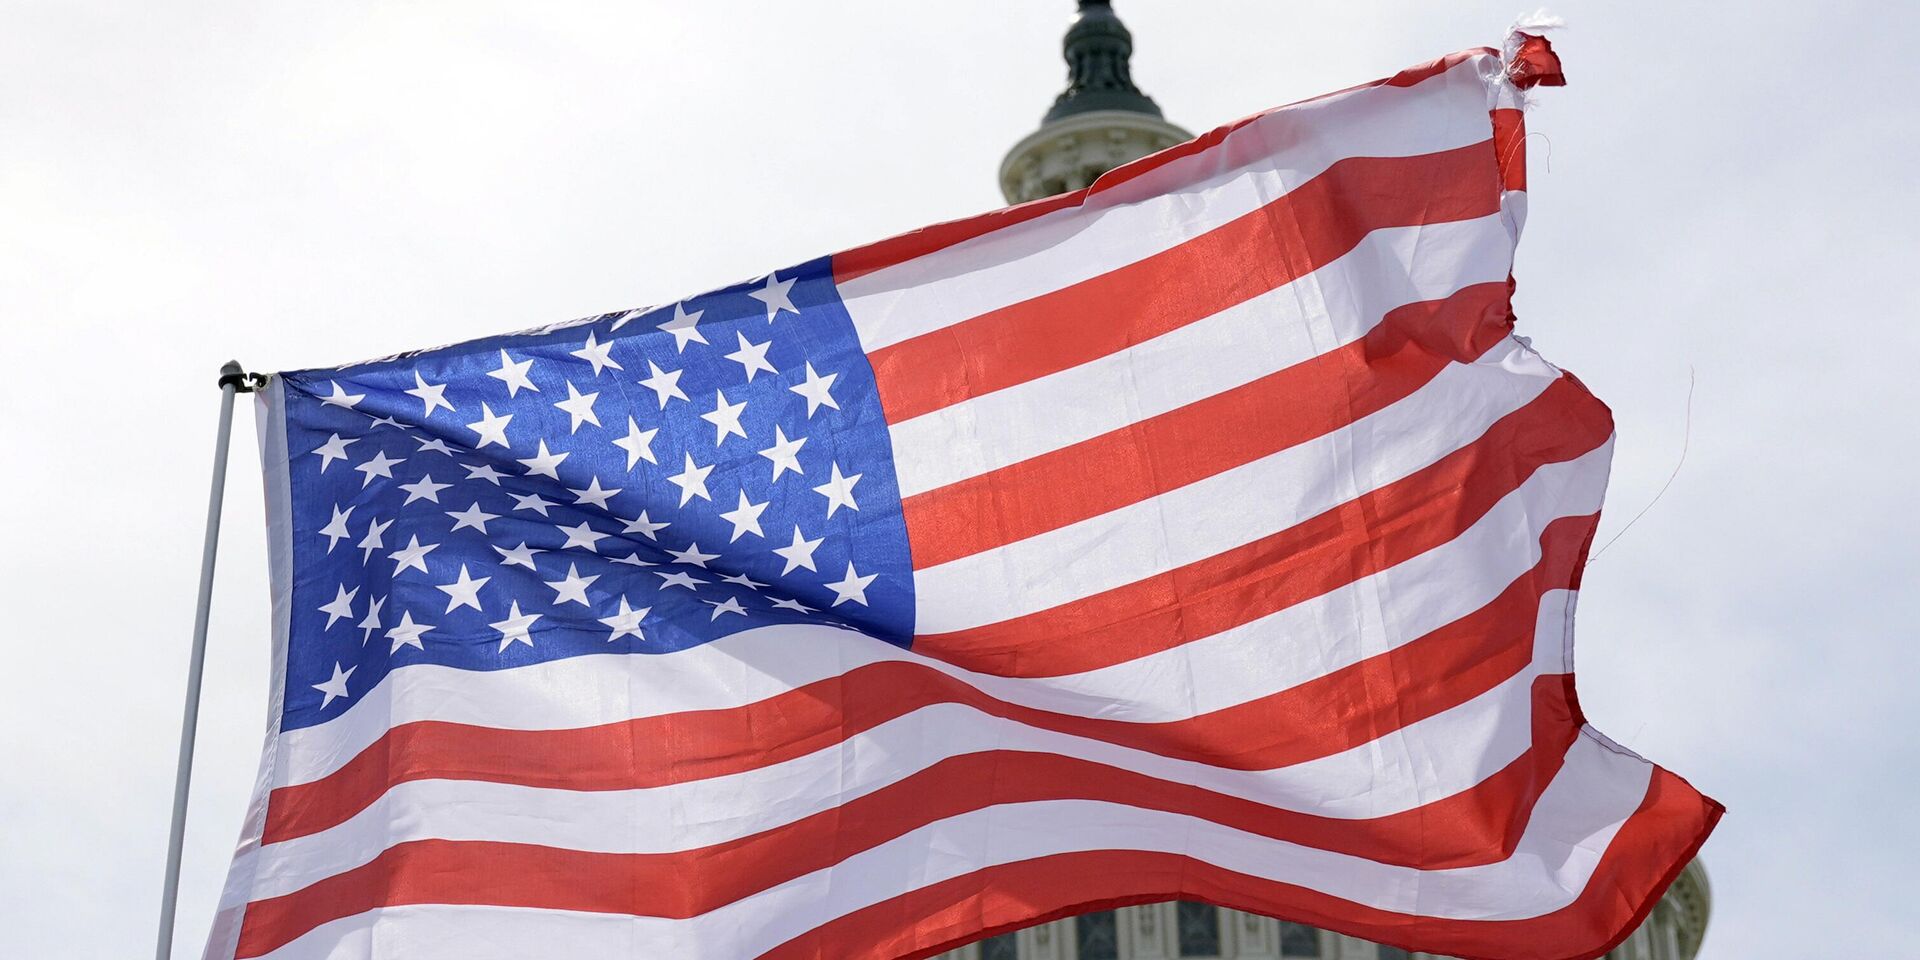 Американские флаги развеваются на ветру возле Капитолия во вторник, 23 апреля 2024 года, в Вашингтоне. Сенат рассматривает вопрос выделения 95 миллиардов долларов военной помощи Украине, Израилю и Тайваню. - ИноСМИ, 1920, 21.05.2024